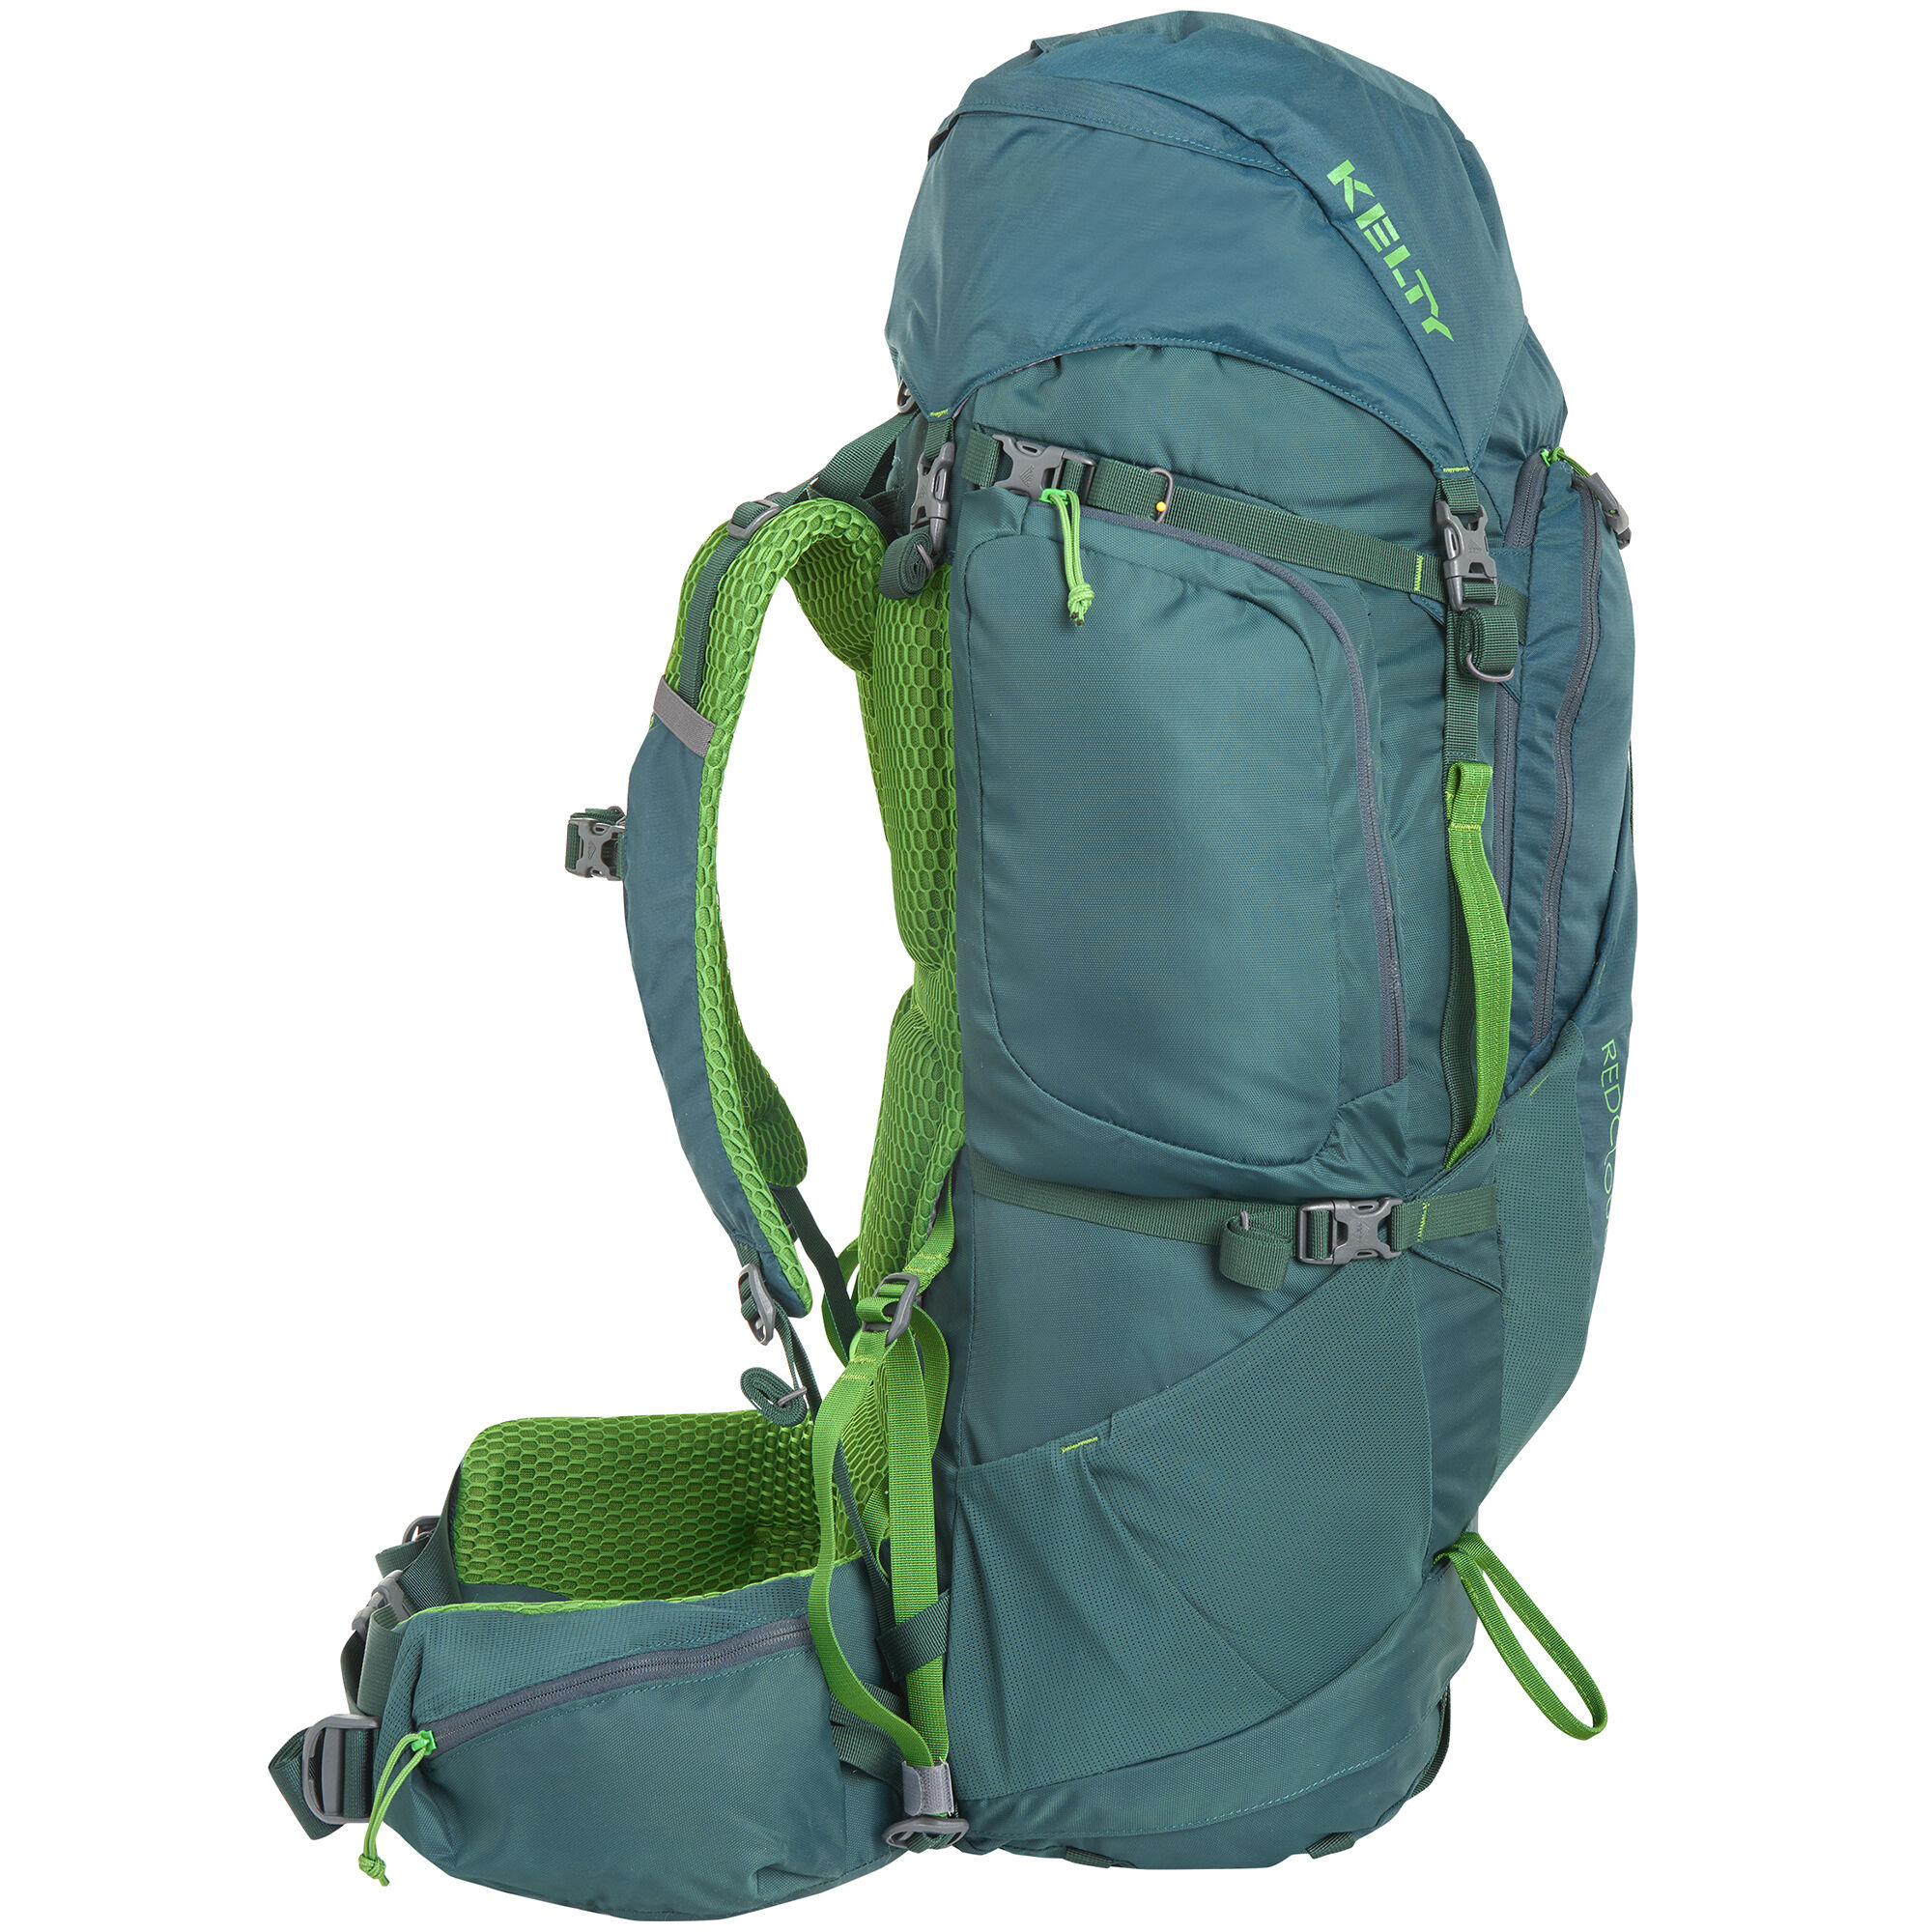 がございま Kelty Unisex's Coyote 65 Hiking Backpack， Black， 65 Liter 並行輸入品  :BIRMXXAMB078XXYP3Z:バーミンガム・エクスプレス 通販 けまでに